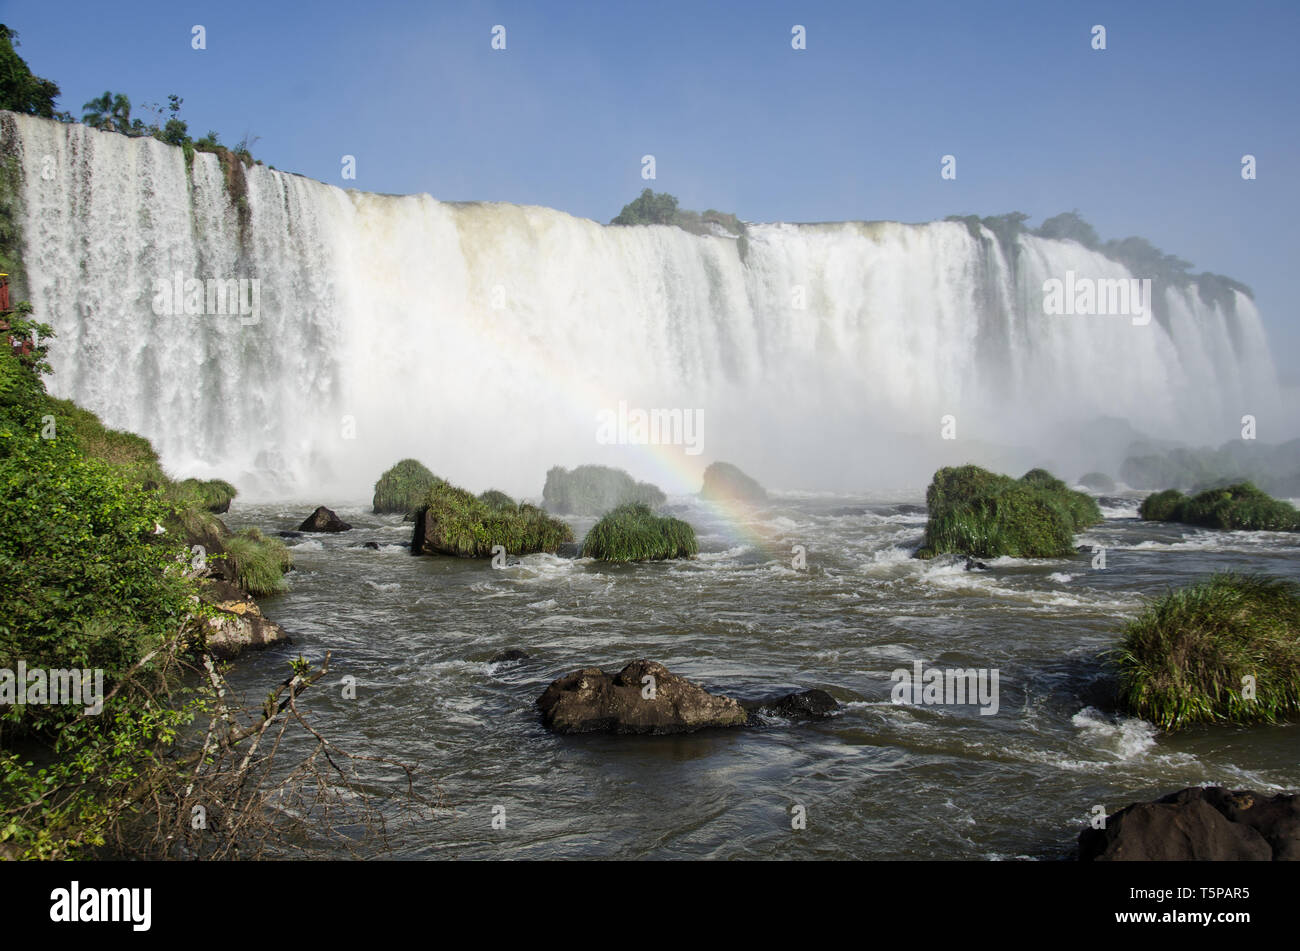 Las poderosas Cataratas de Iguaçu visto desde el lado brasileño Foto de stock